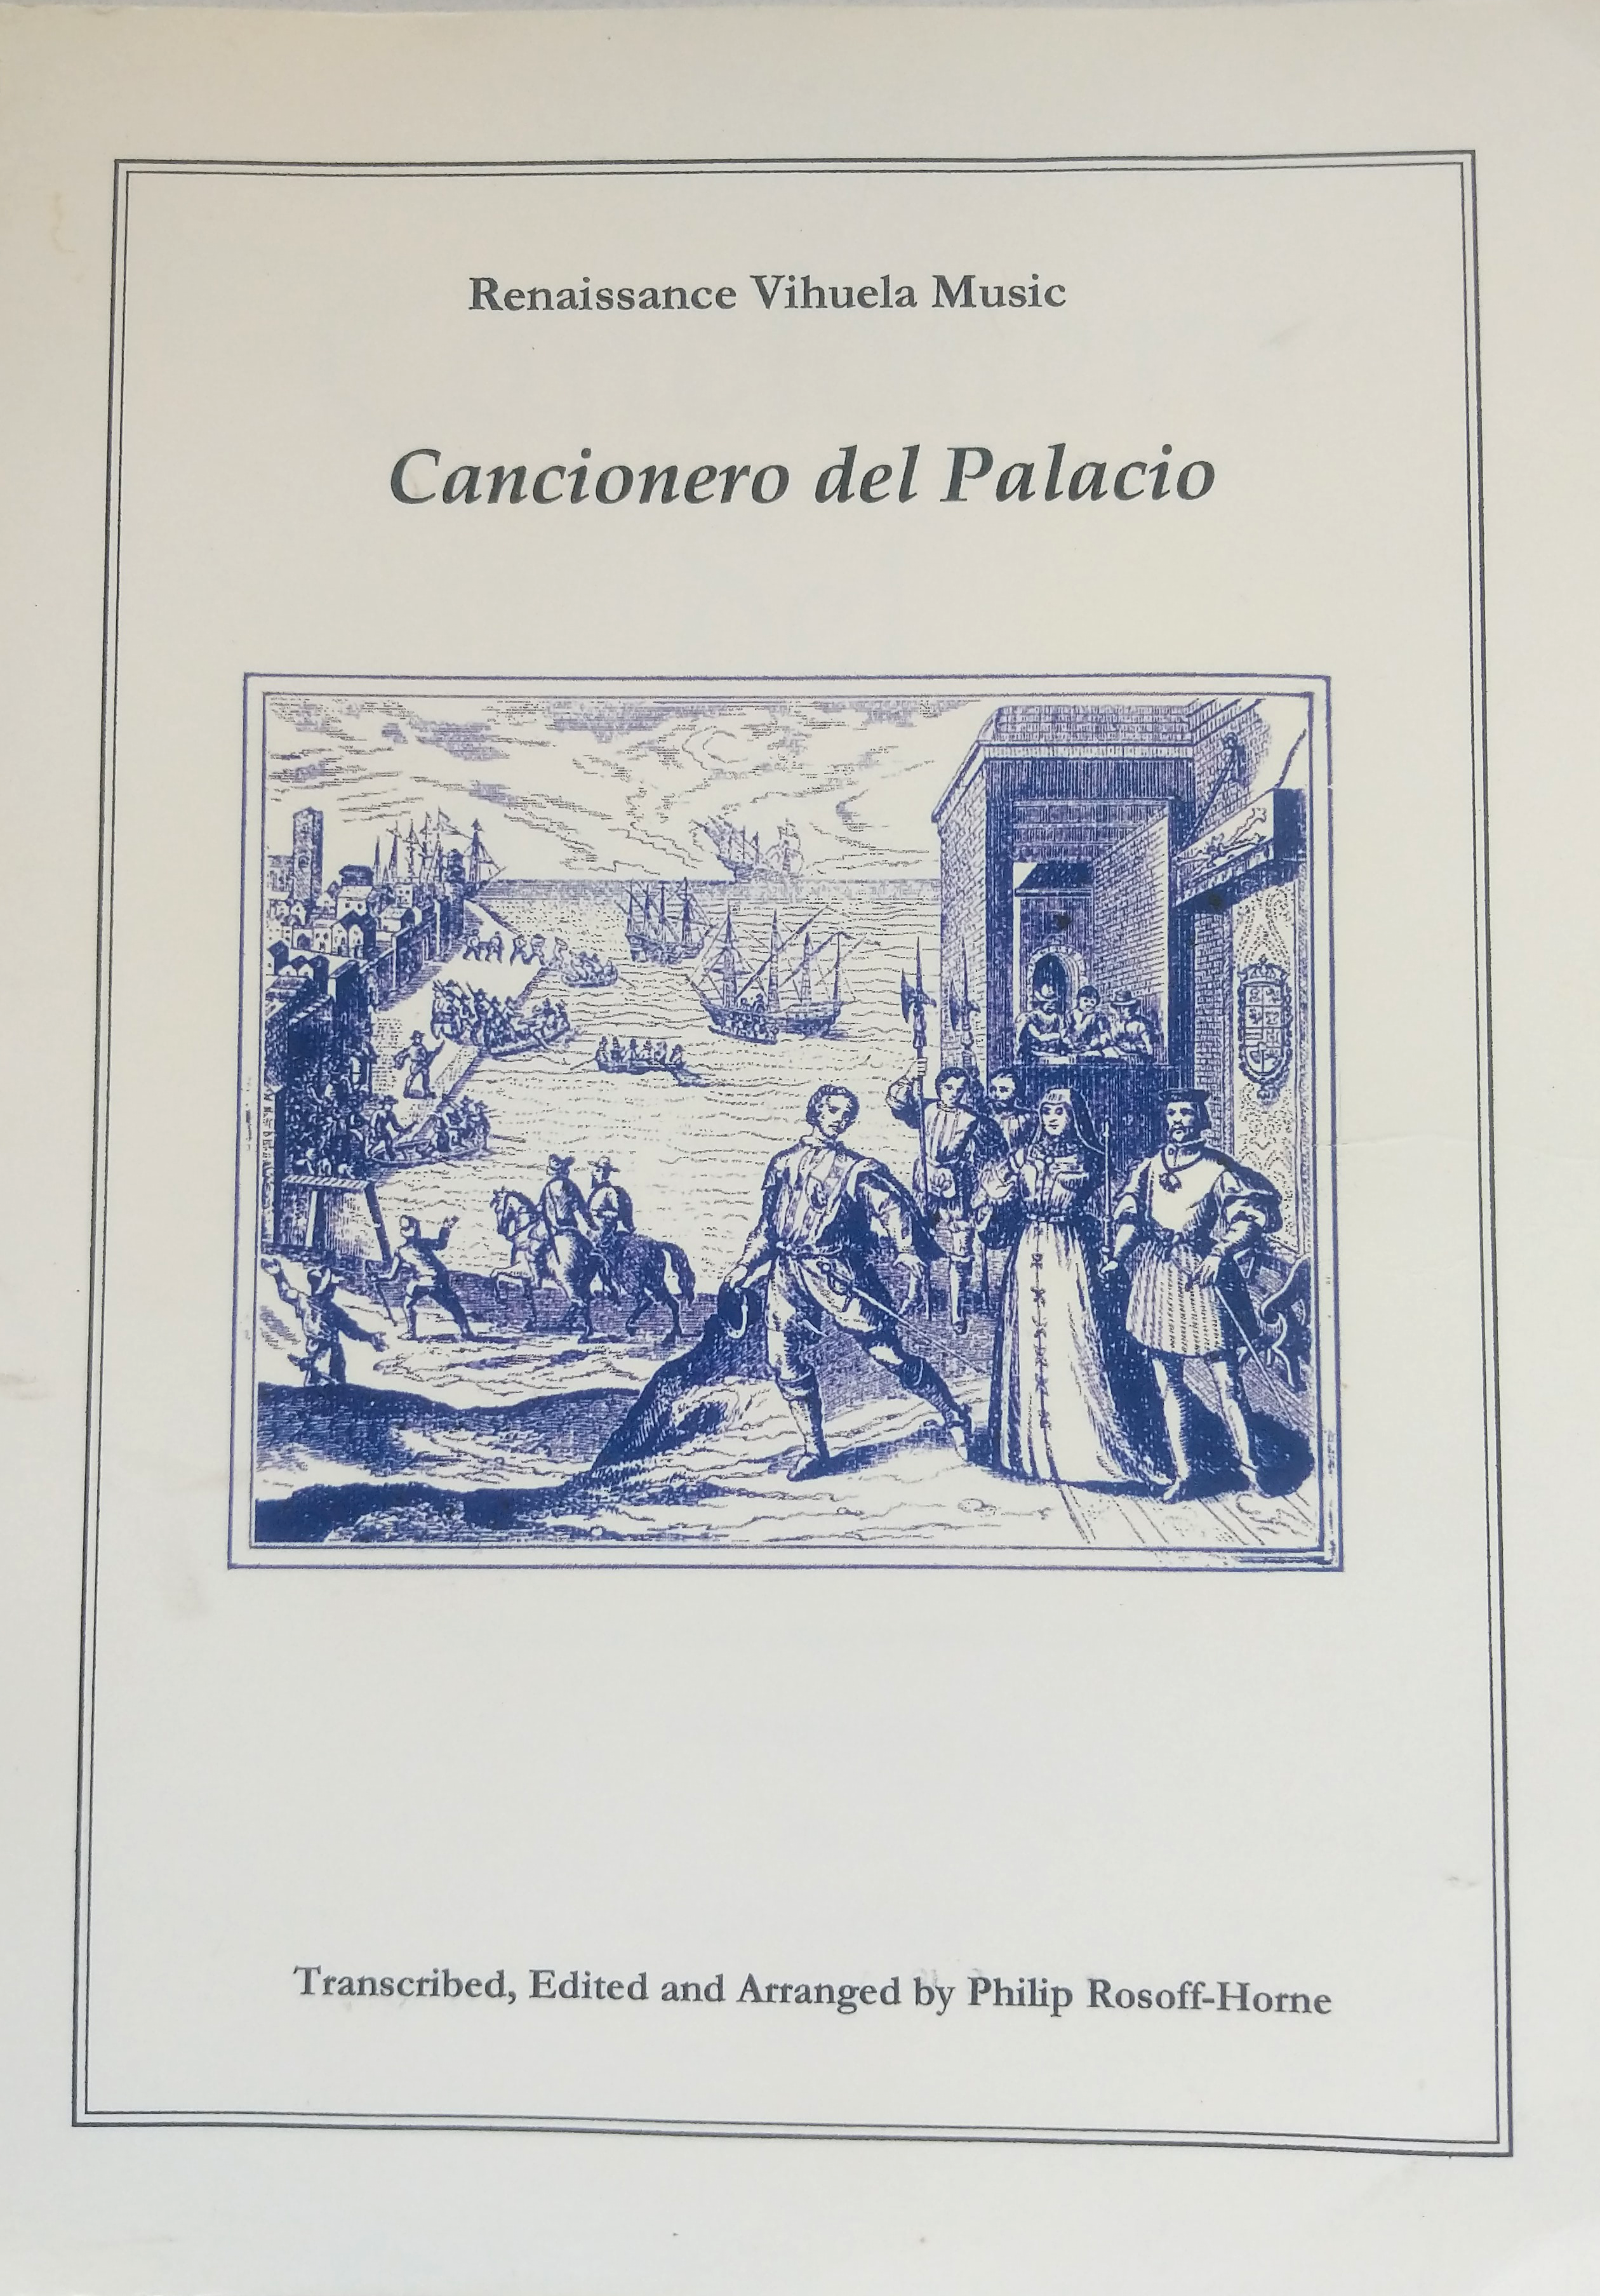 The cover of Cancionero del Palacio